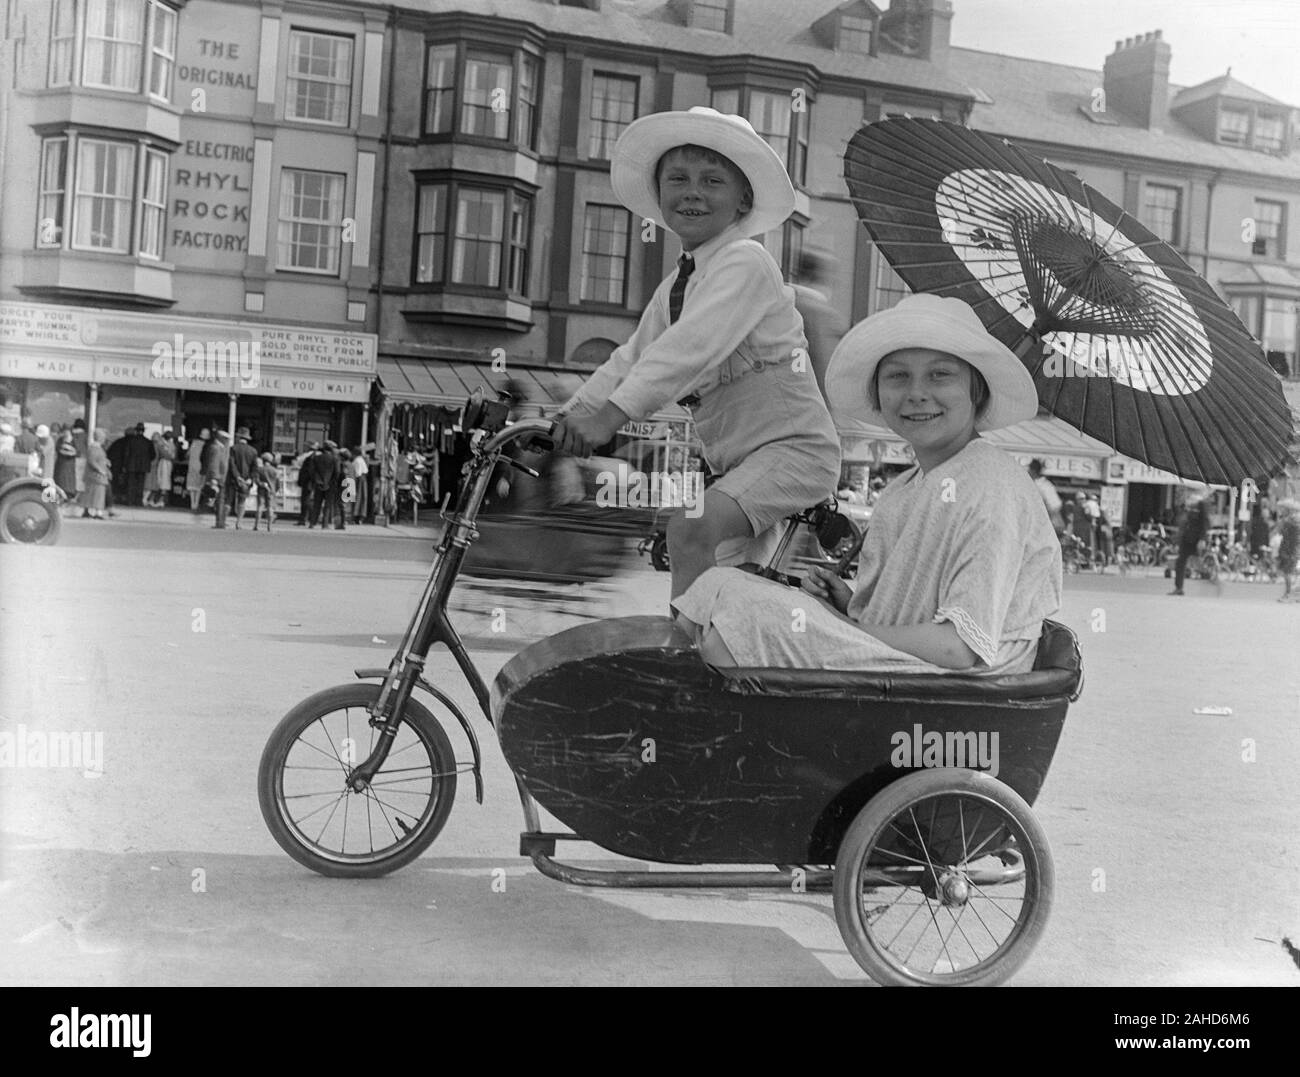 Vintage spätviktorianisches oder frühes Schwarz-Weiß-Foto von Edwardian, das einen jungen Jungen zeigt, der einen großen weißen Hut trägt, mit seiner Schwester ein Fahrrad trittend, einen Sonnenschirm oder einen Regenschirm hält und in einem Beiwagen sitzt, der am Fahrrad befestigt ist. Foto in Rhyl, nordwales. Stockfoto